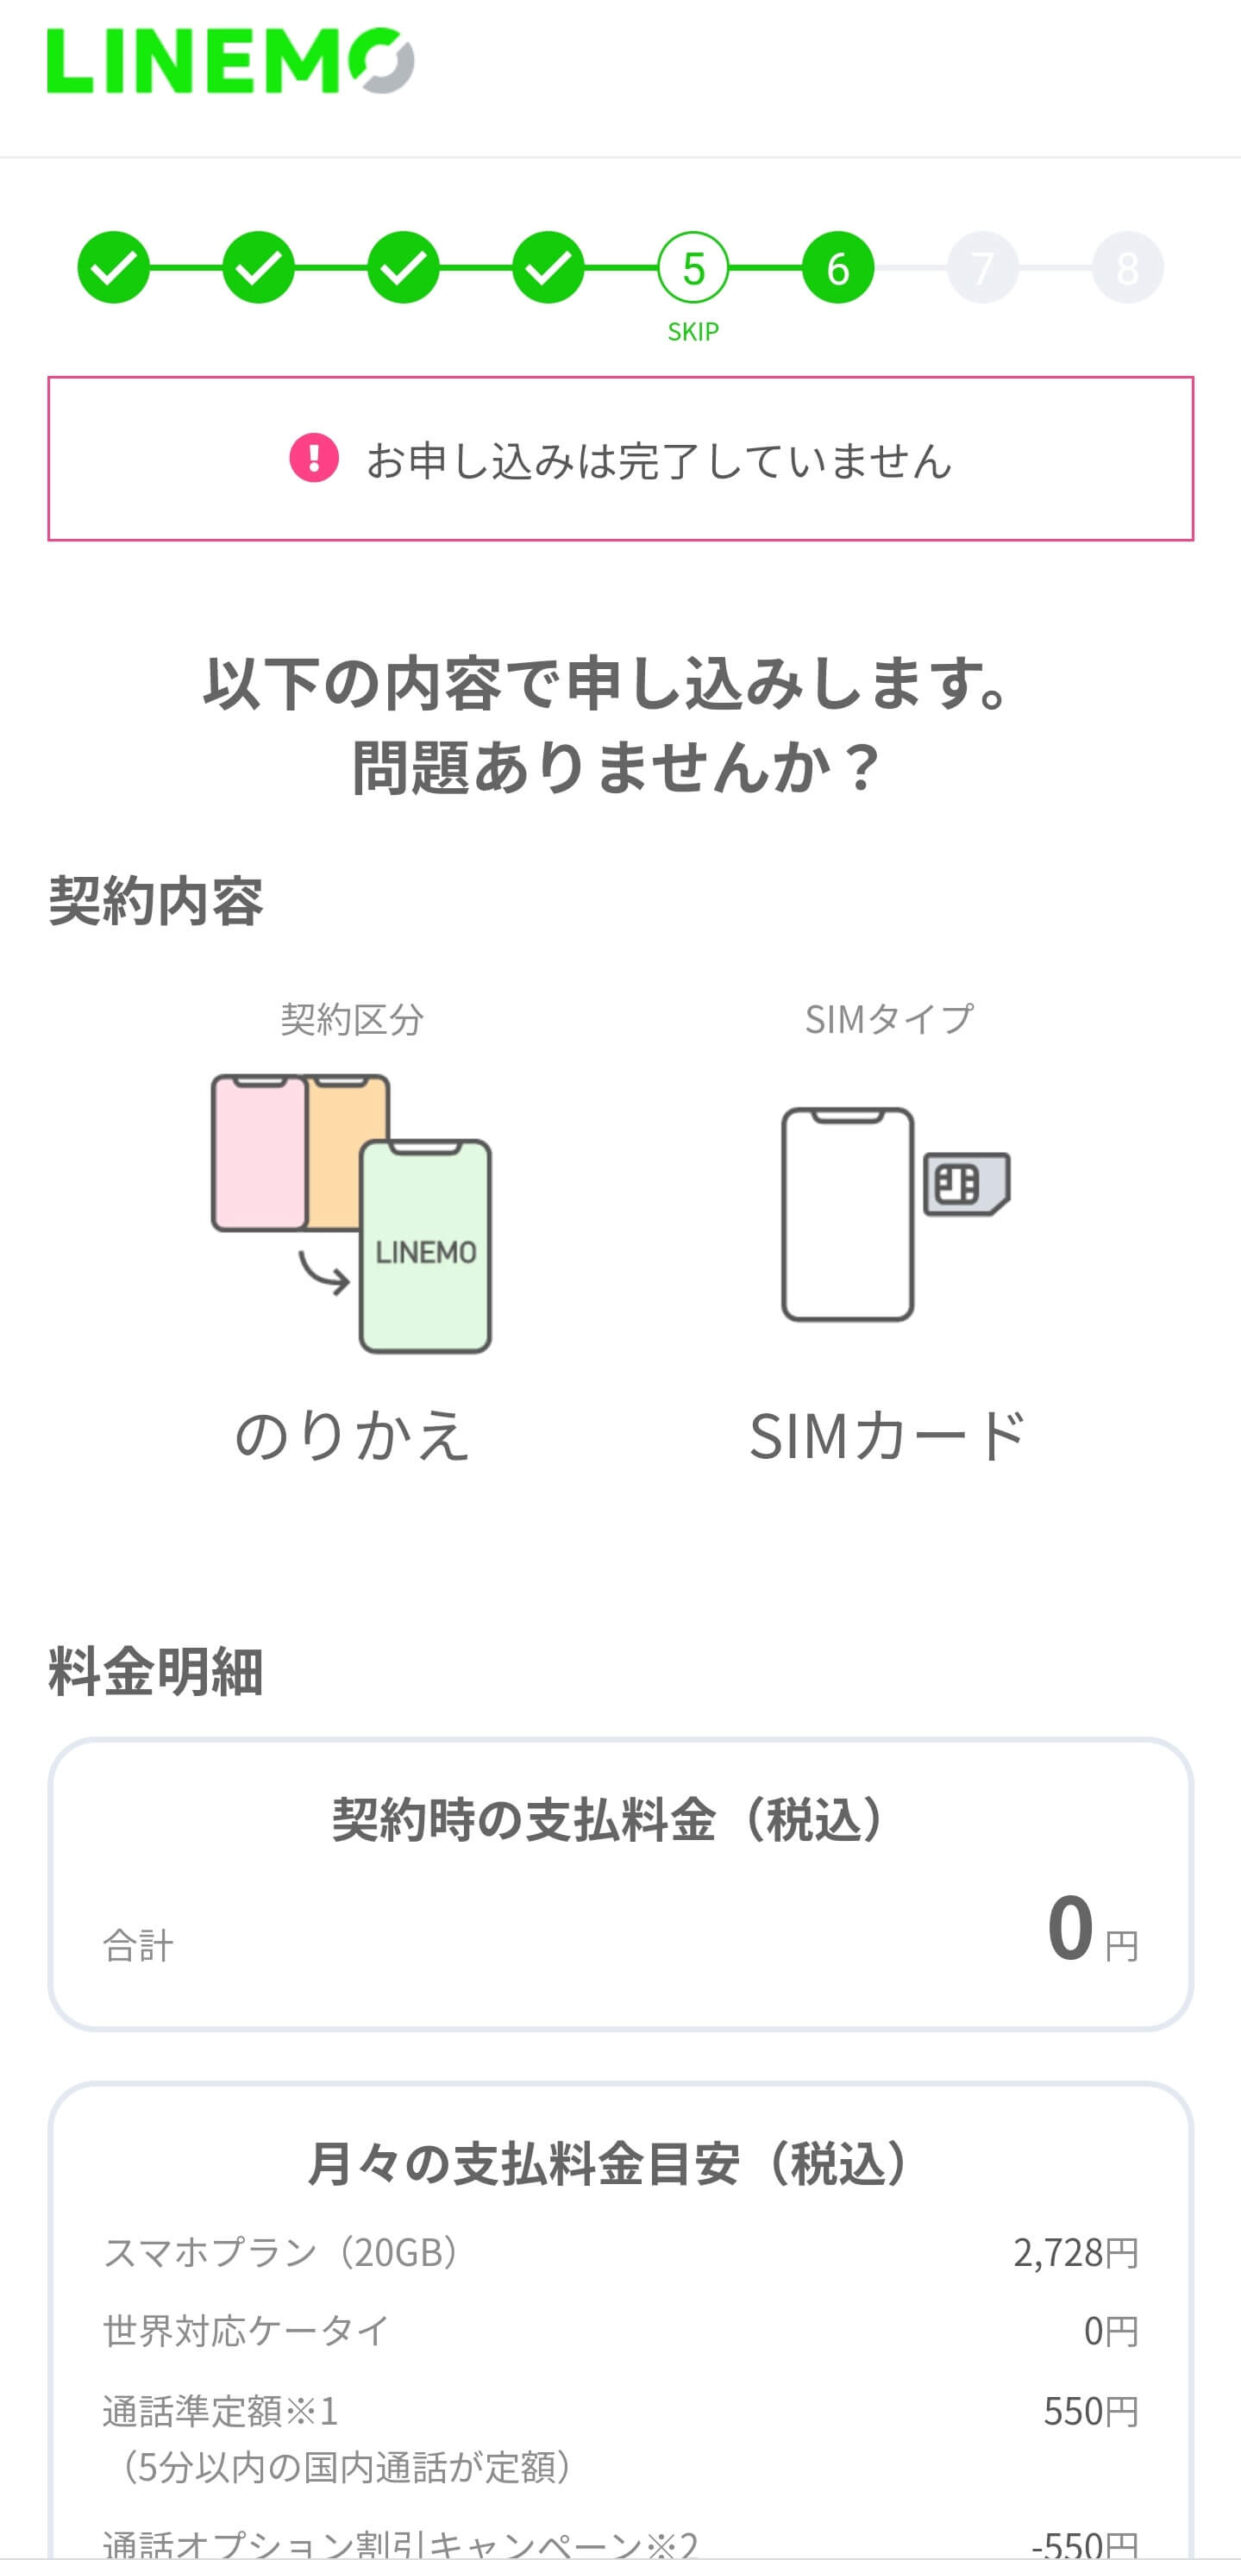 【保存版】J:COM MOBILEからLINEMOに乗り換え（MNP）するやり方手順 linemo-application-21-scaled-1